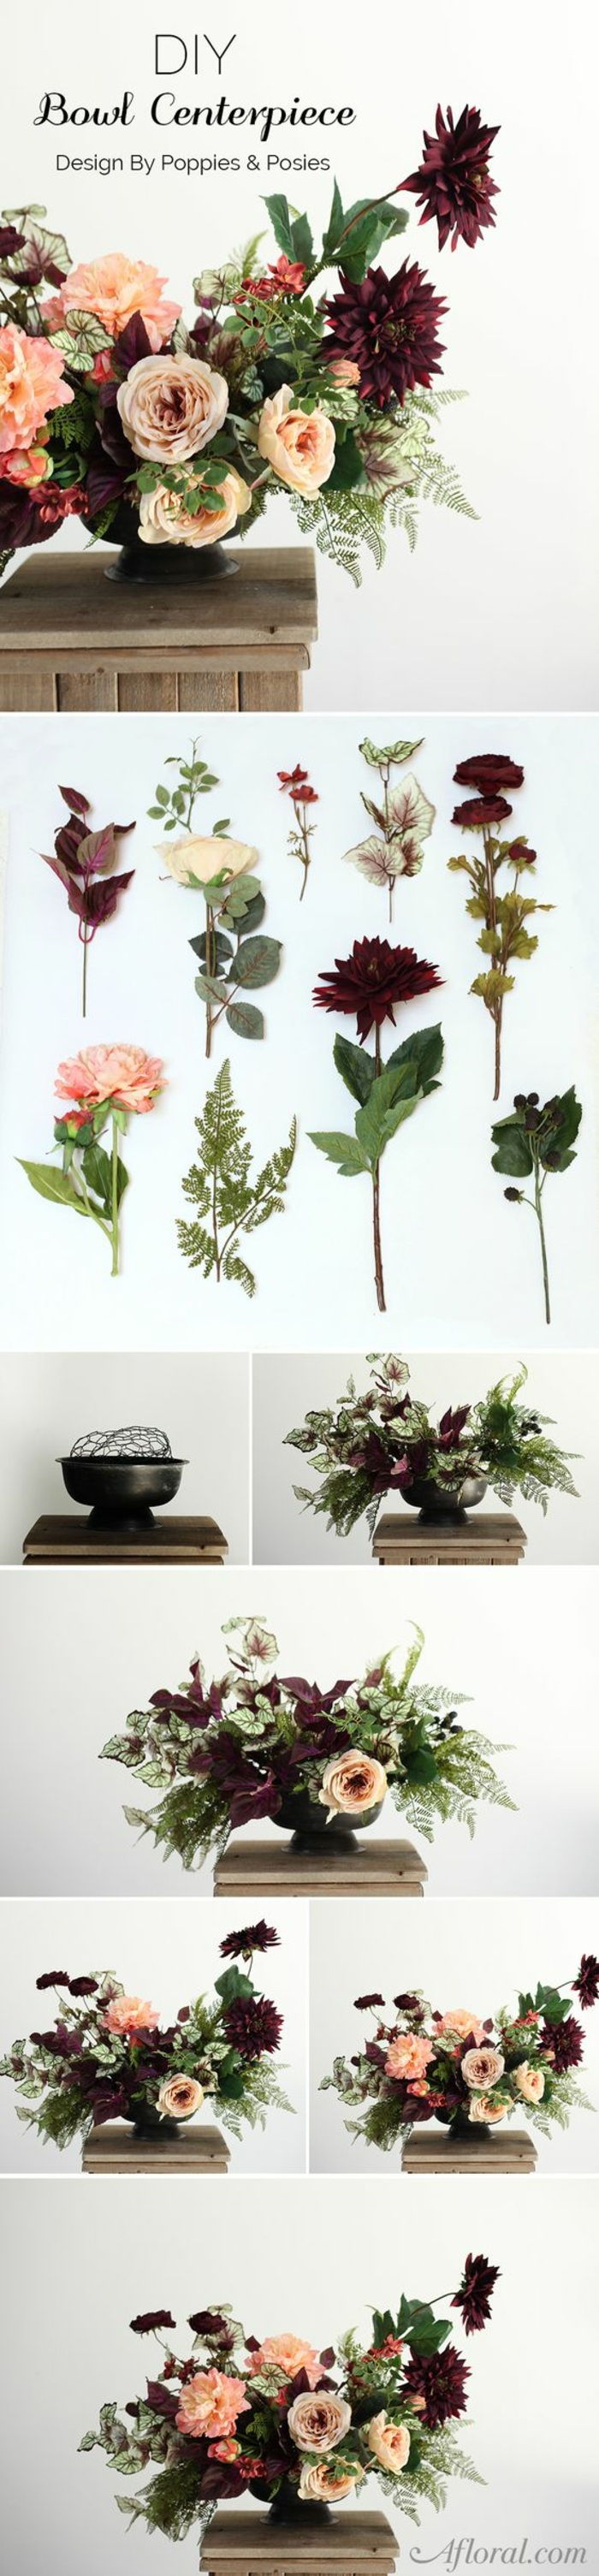 şenlikli masa dekorasyonu, çiçek düzenlenmesi, sünger, vazo, masa dekorasyonu